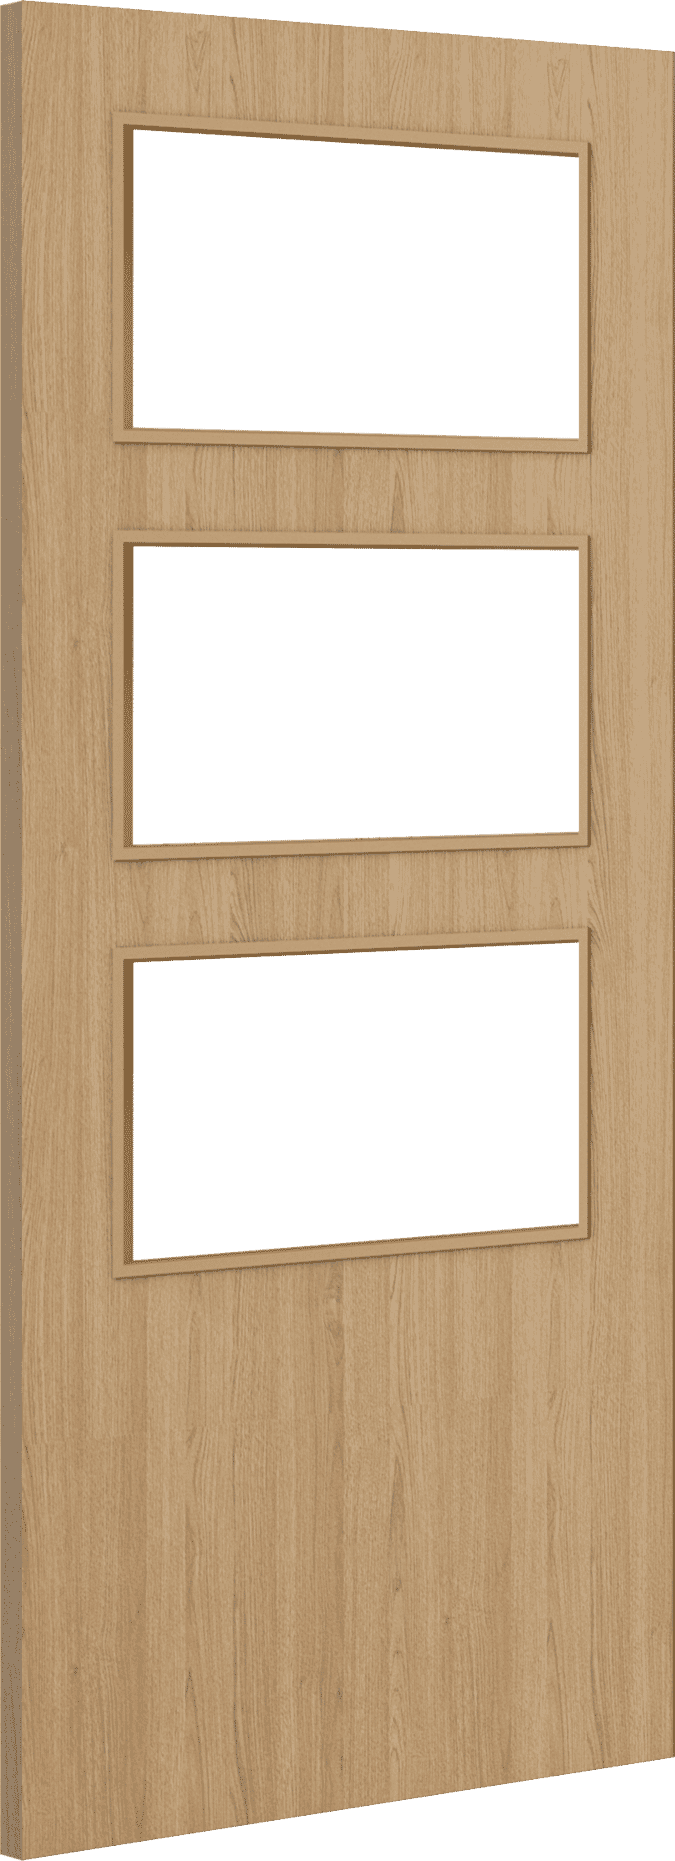 2040mm x 526mm x 44mm Architectural Oak 03 Clear Glazed - Prefinished FD30 Fire Door Blank